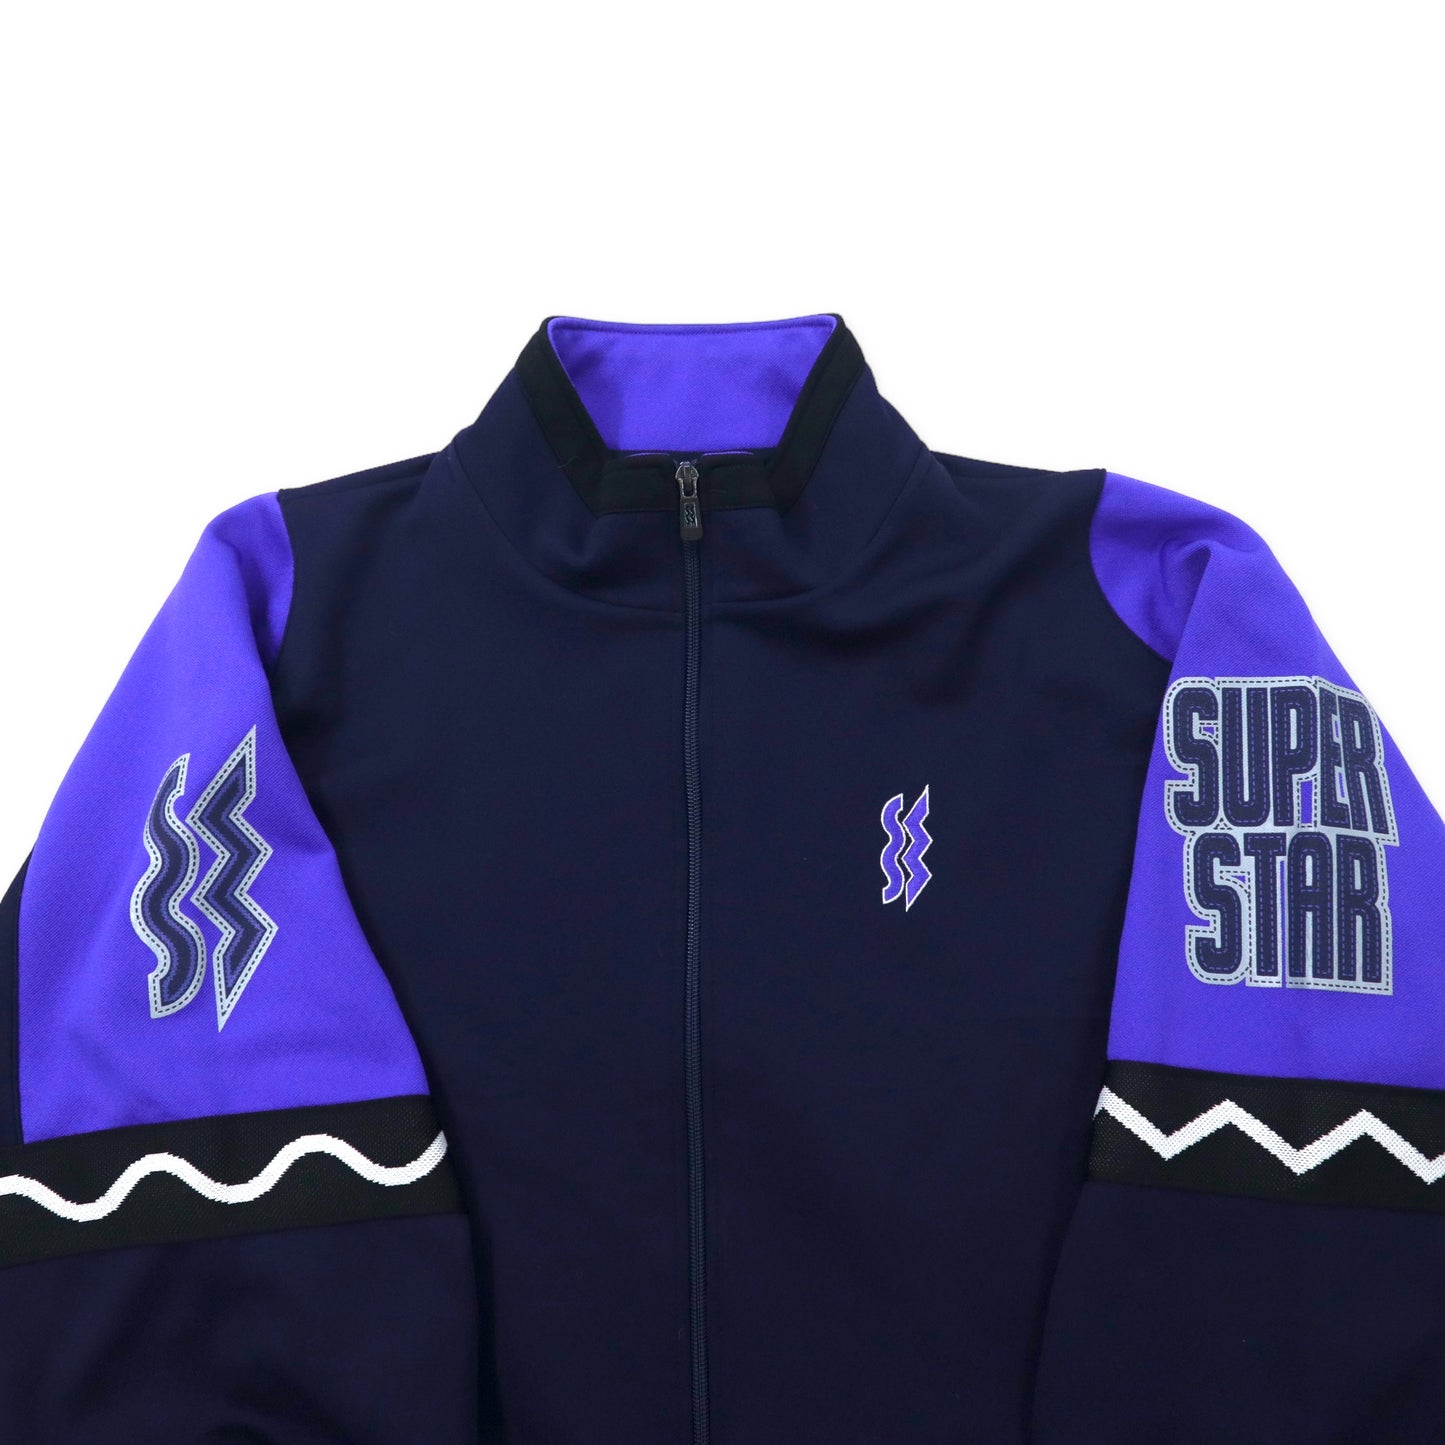 SUPER STAR 90年代 トラックジャケット ジャージ XO ネイビー ポリエステル 日本製